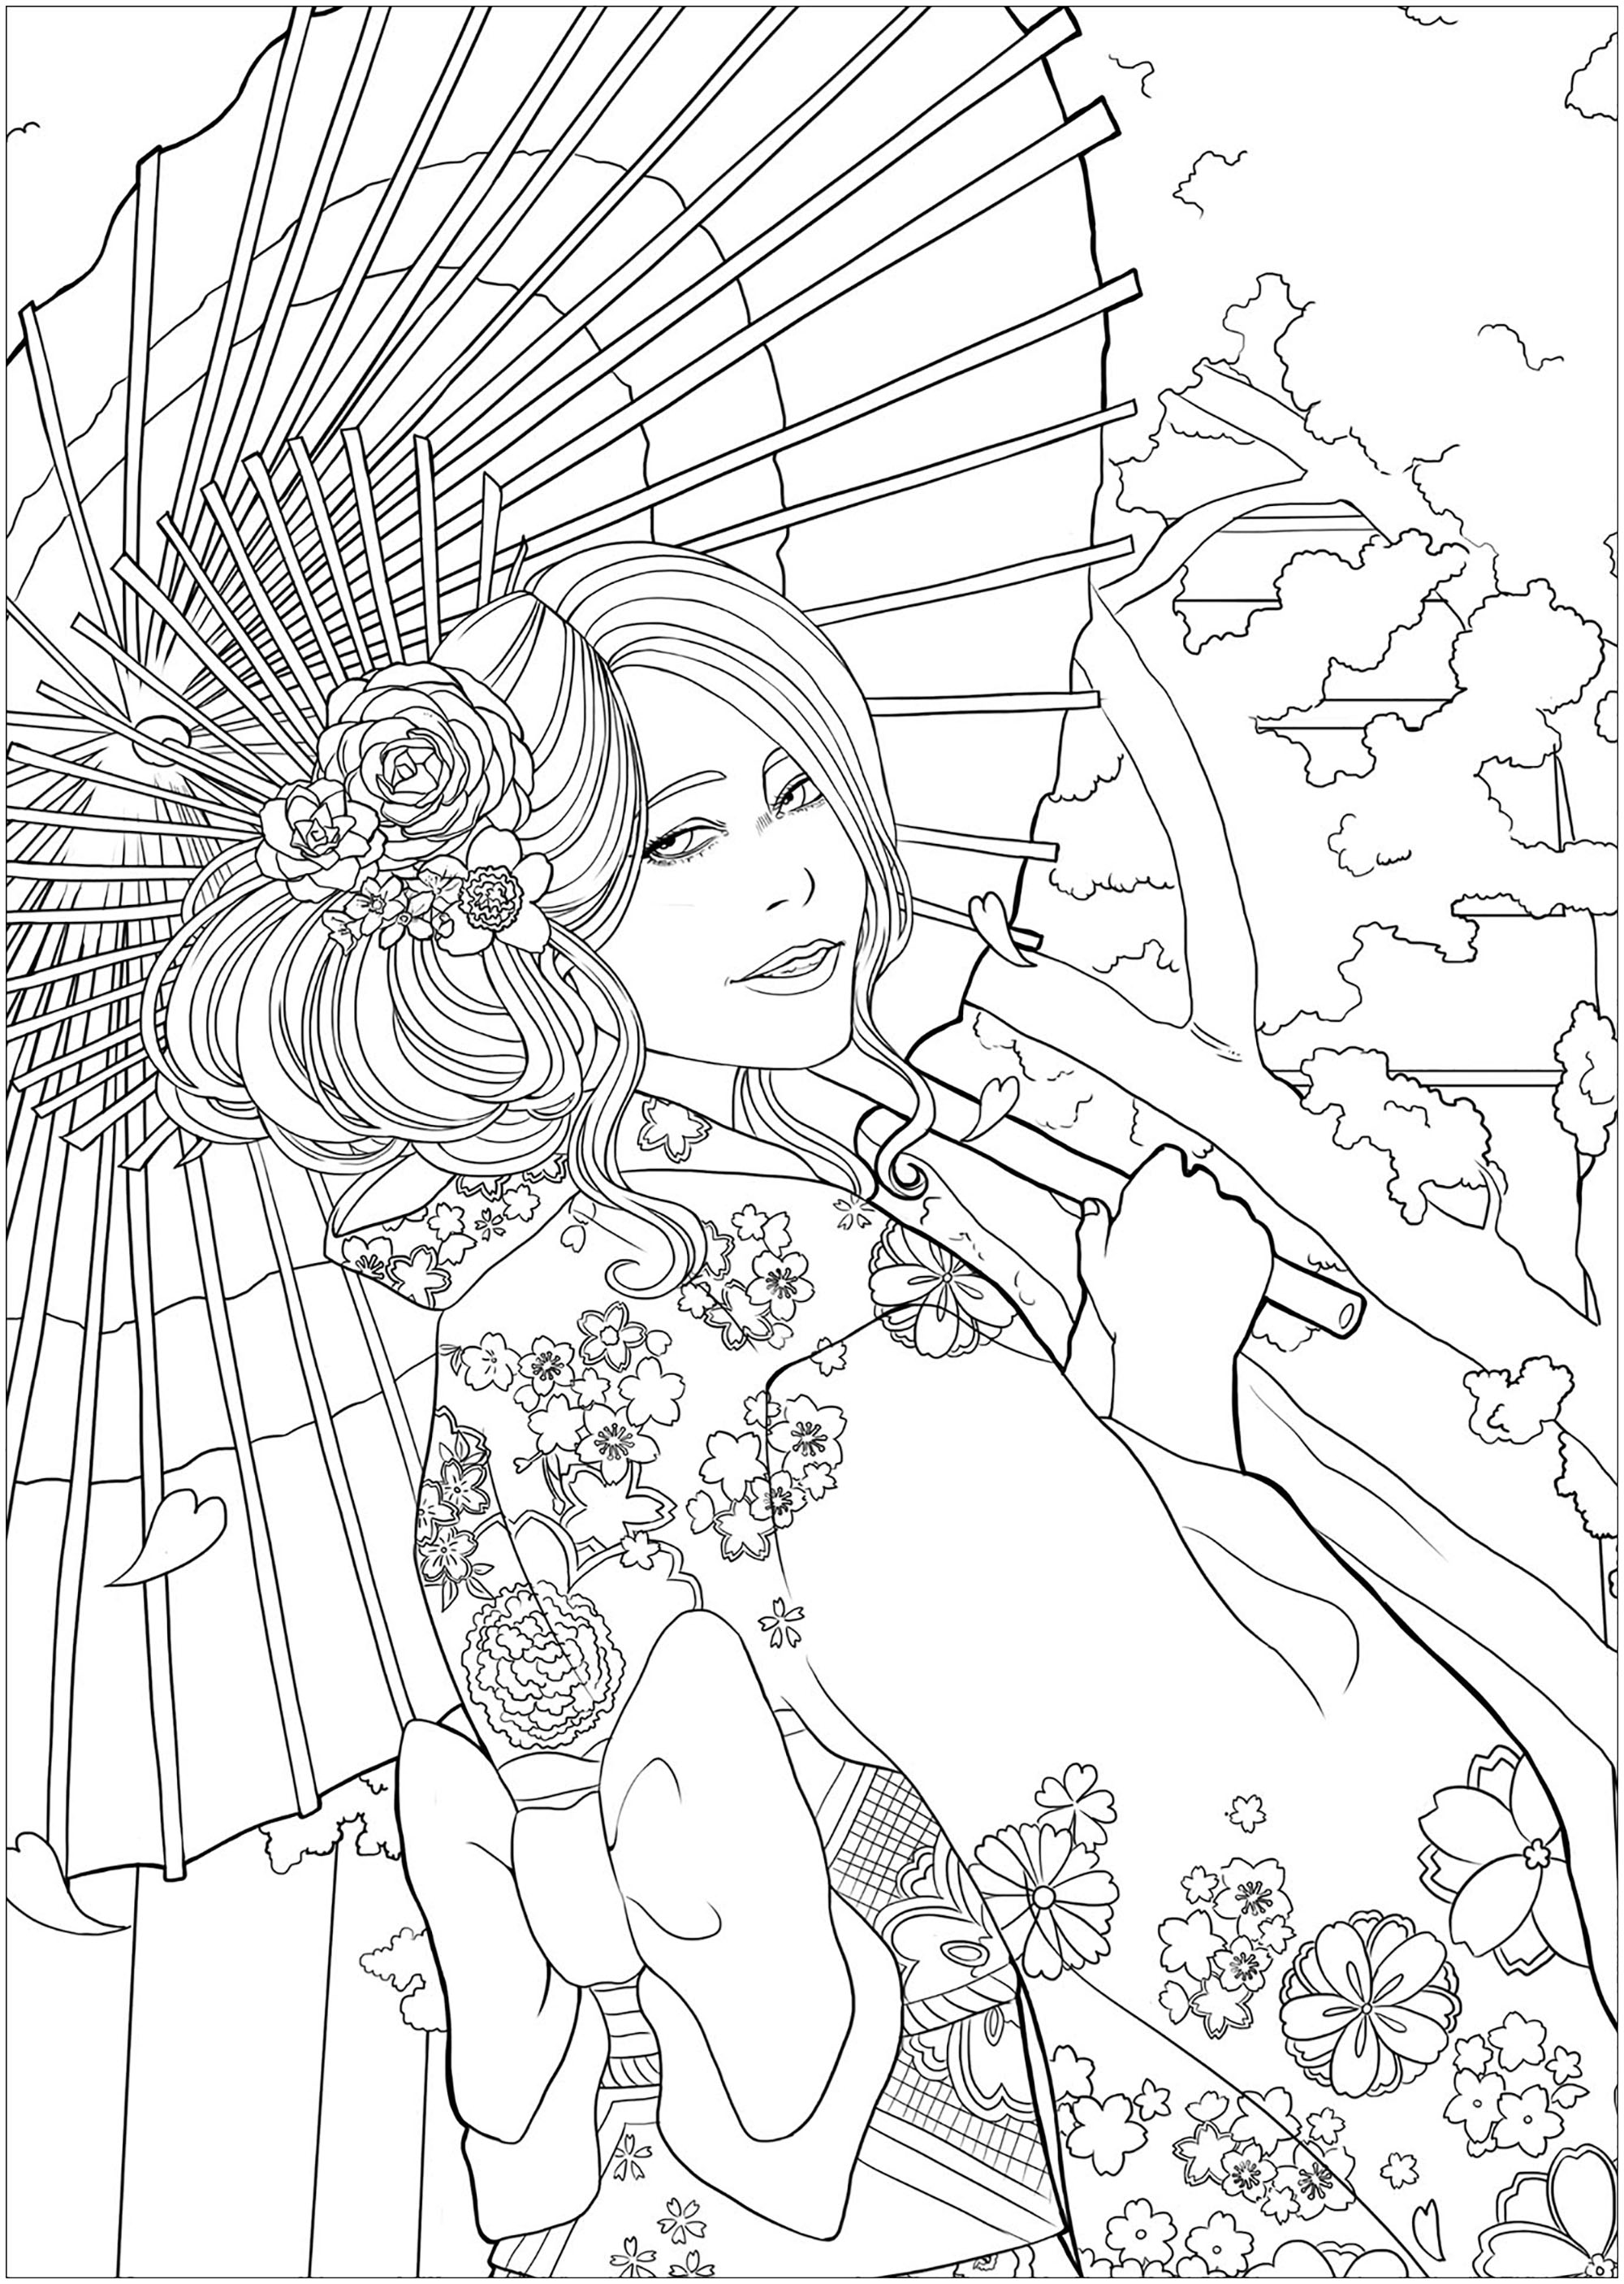 Mulher jovem e elegante em frente a um templo e a flores de cerejeira, com o seu mais belo yukata. Versão fácil 2